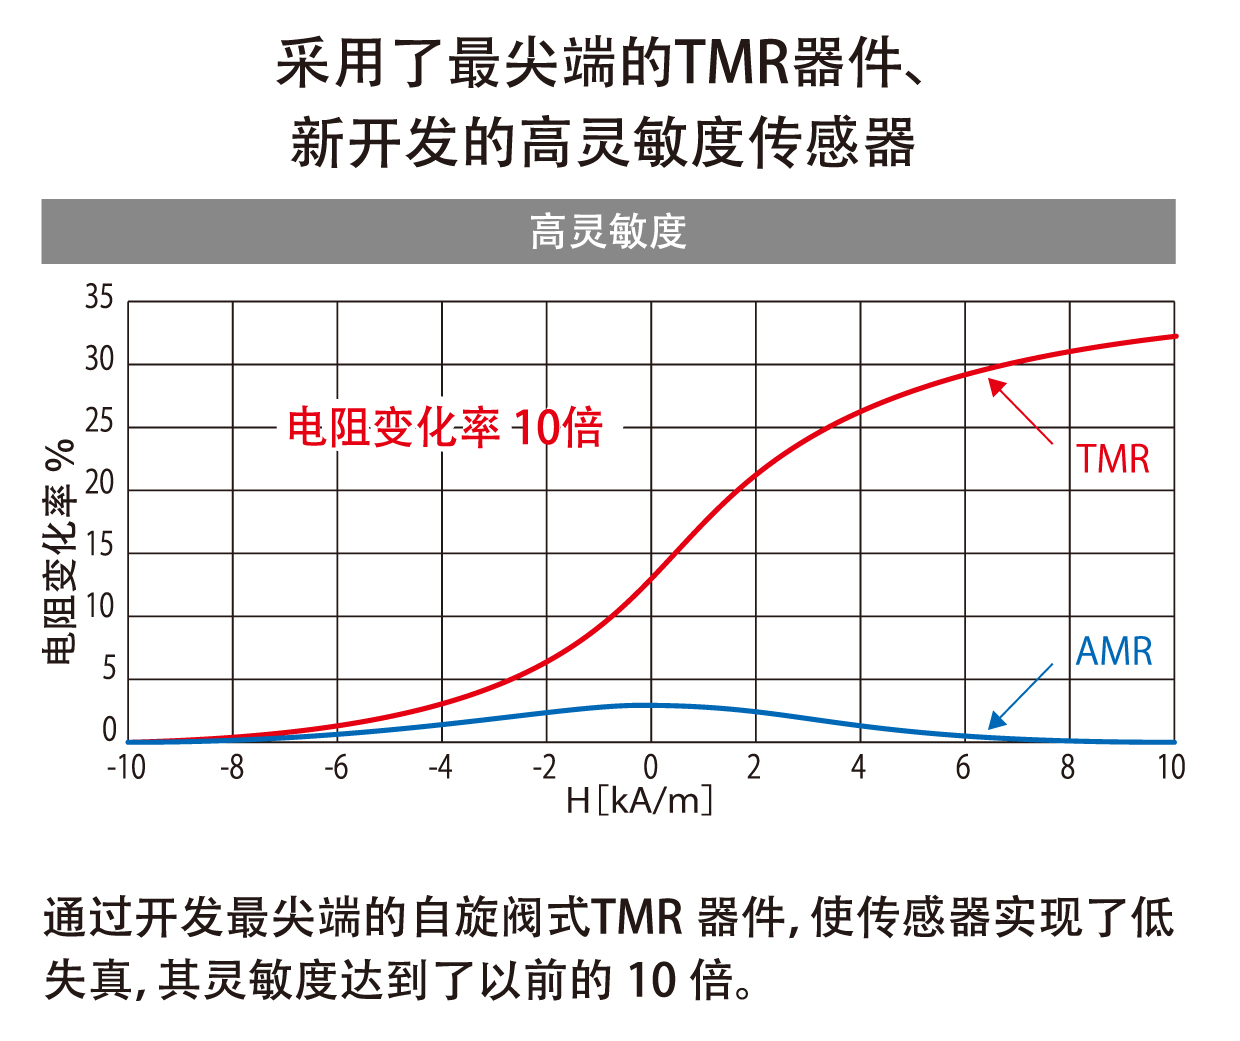 最先端のTMRデバイスを採用した新開発の高感度センサ